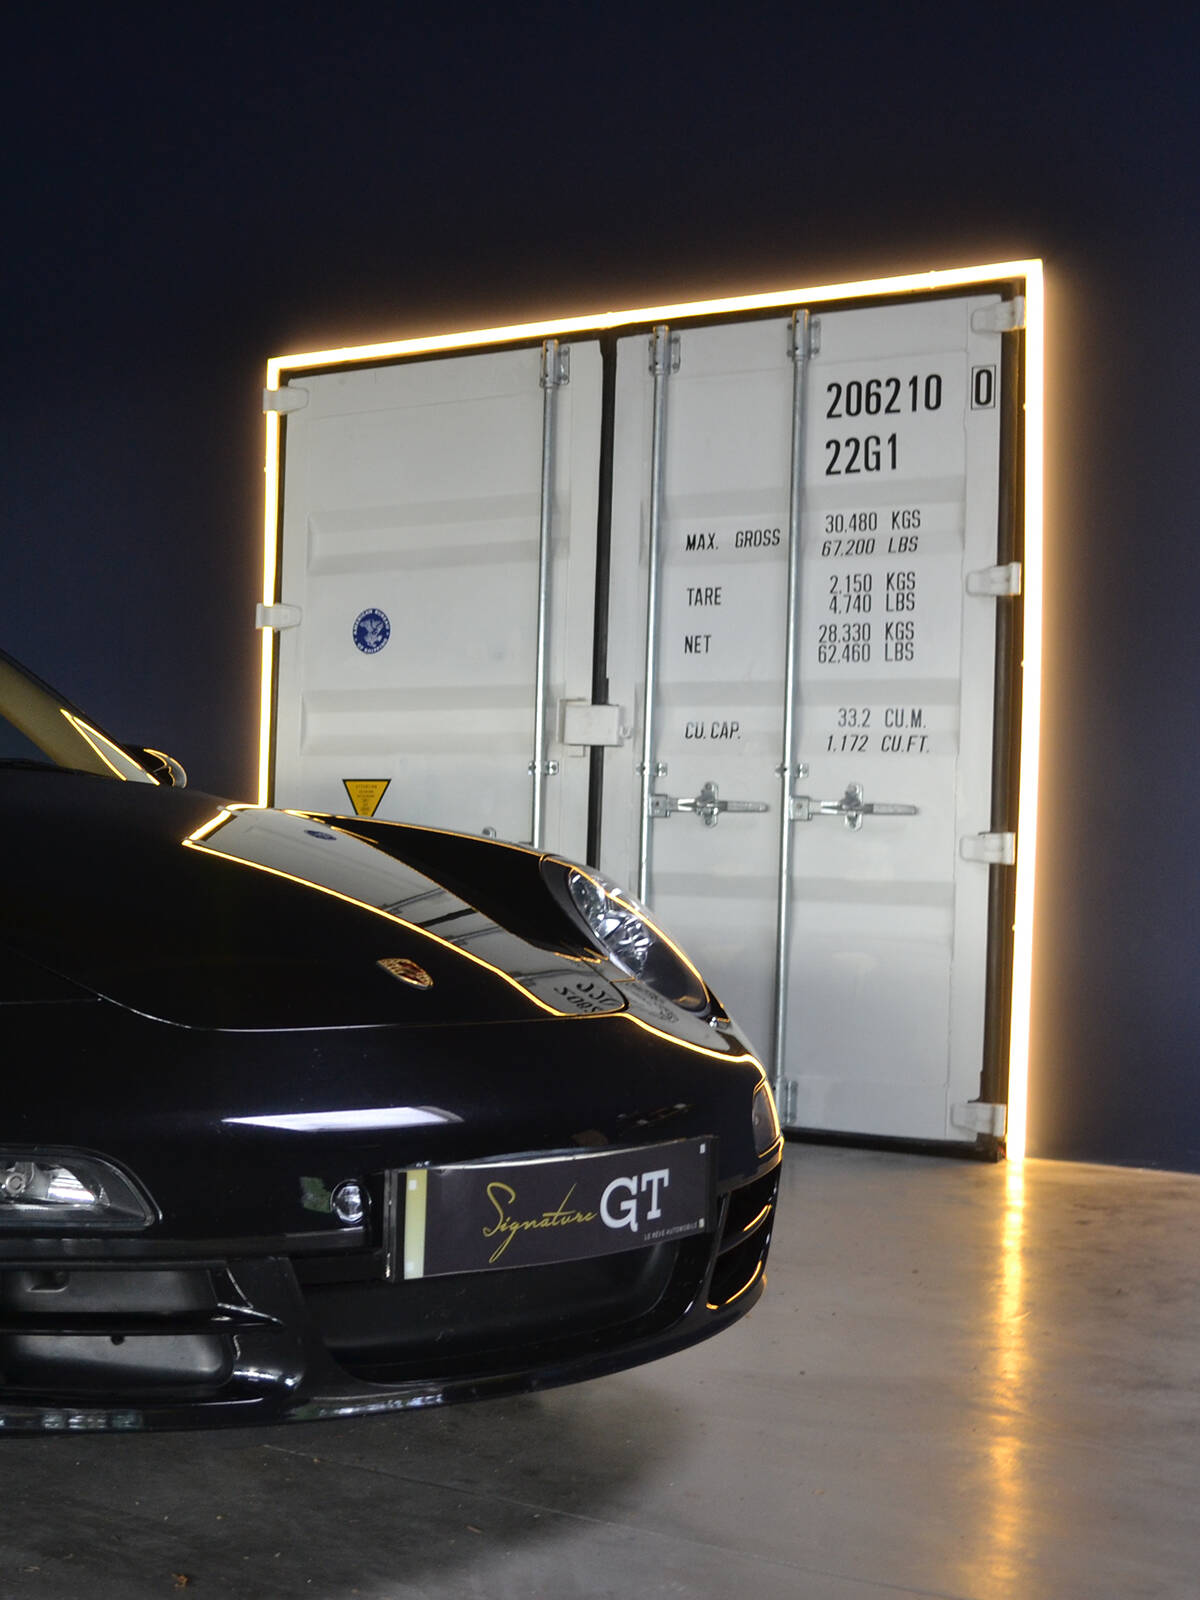 Concessionnaire automobile Signature GT - un projet de décoration et d'agencement global par Le point D